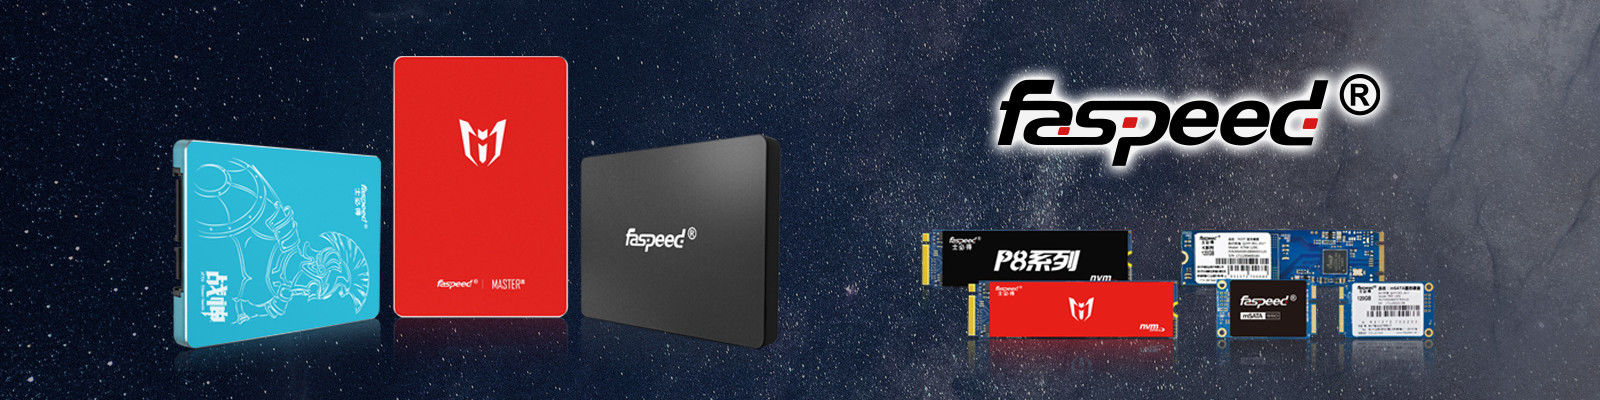 SSD Faspeed